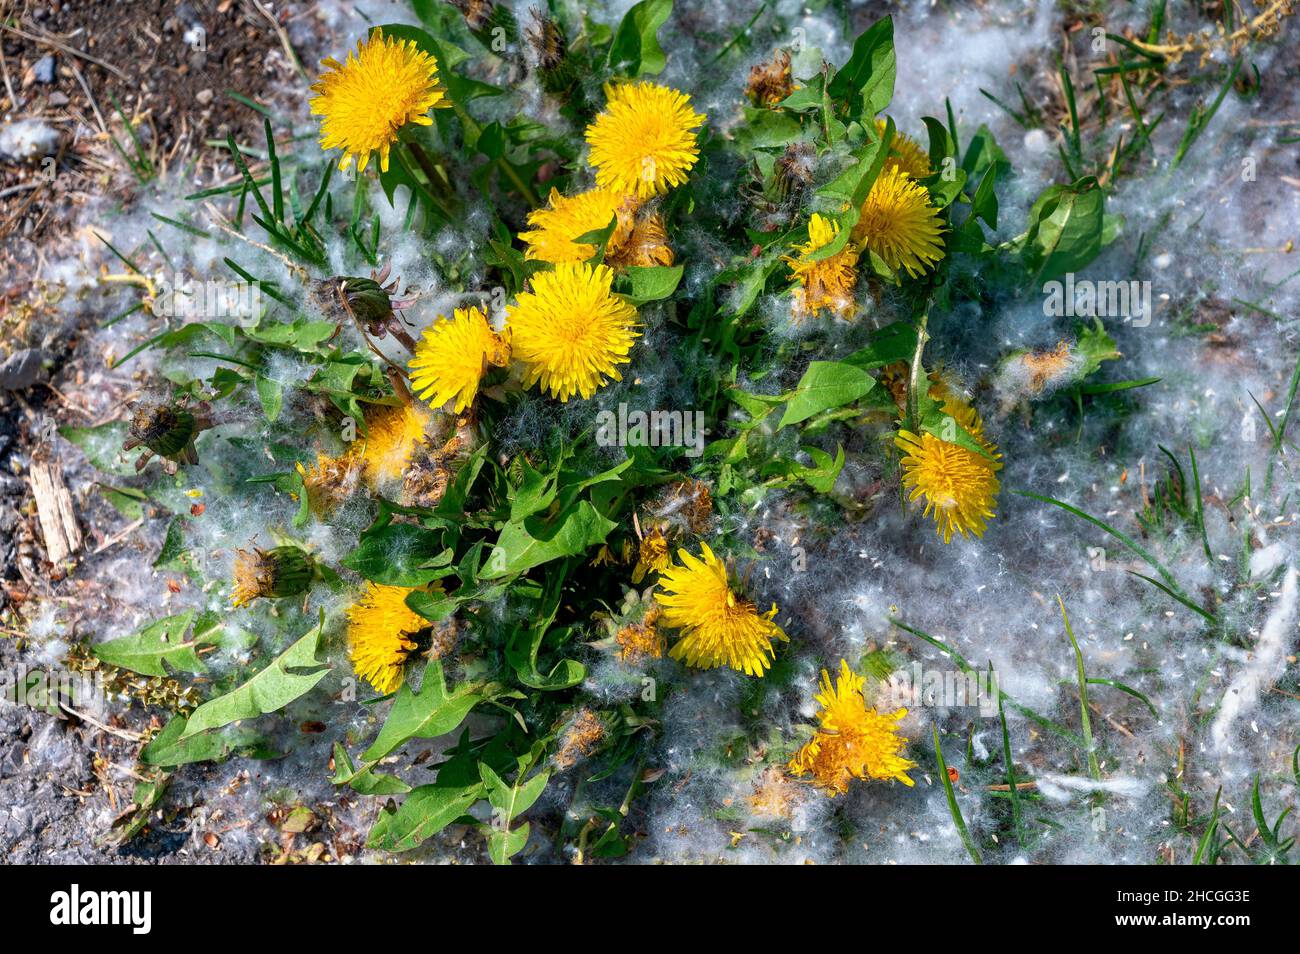 pianta di dente di leone con fiore giallo che cresce su un terreno coperto da semi di pioppo bianco Foto Stock